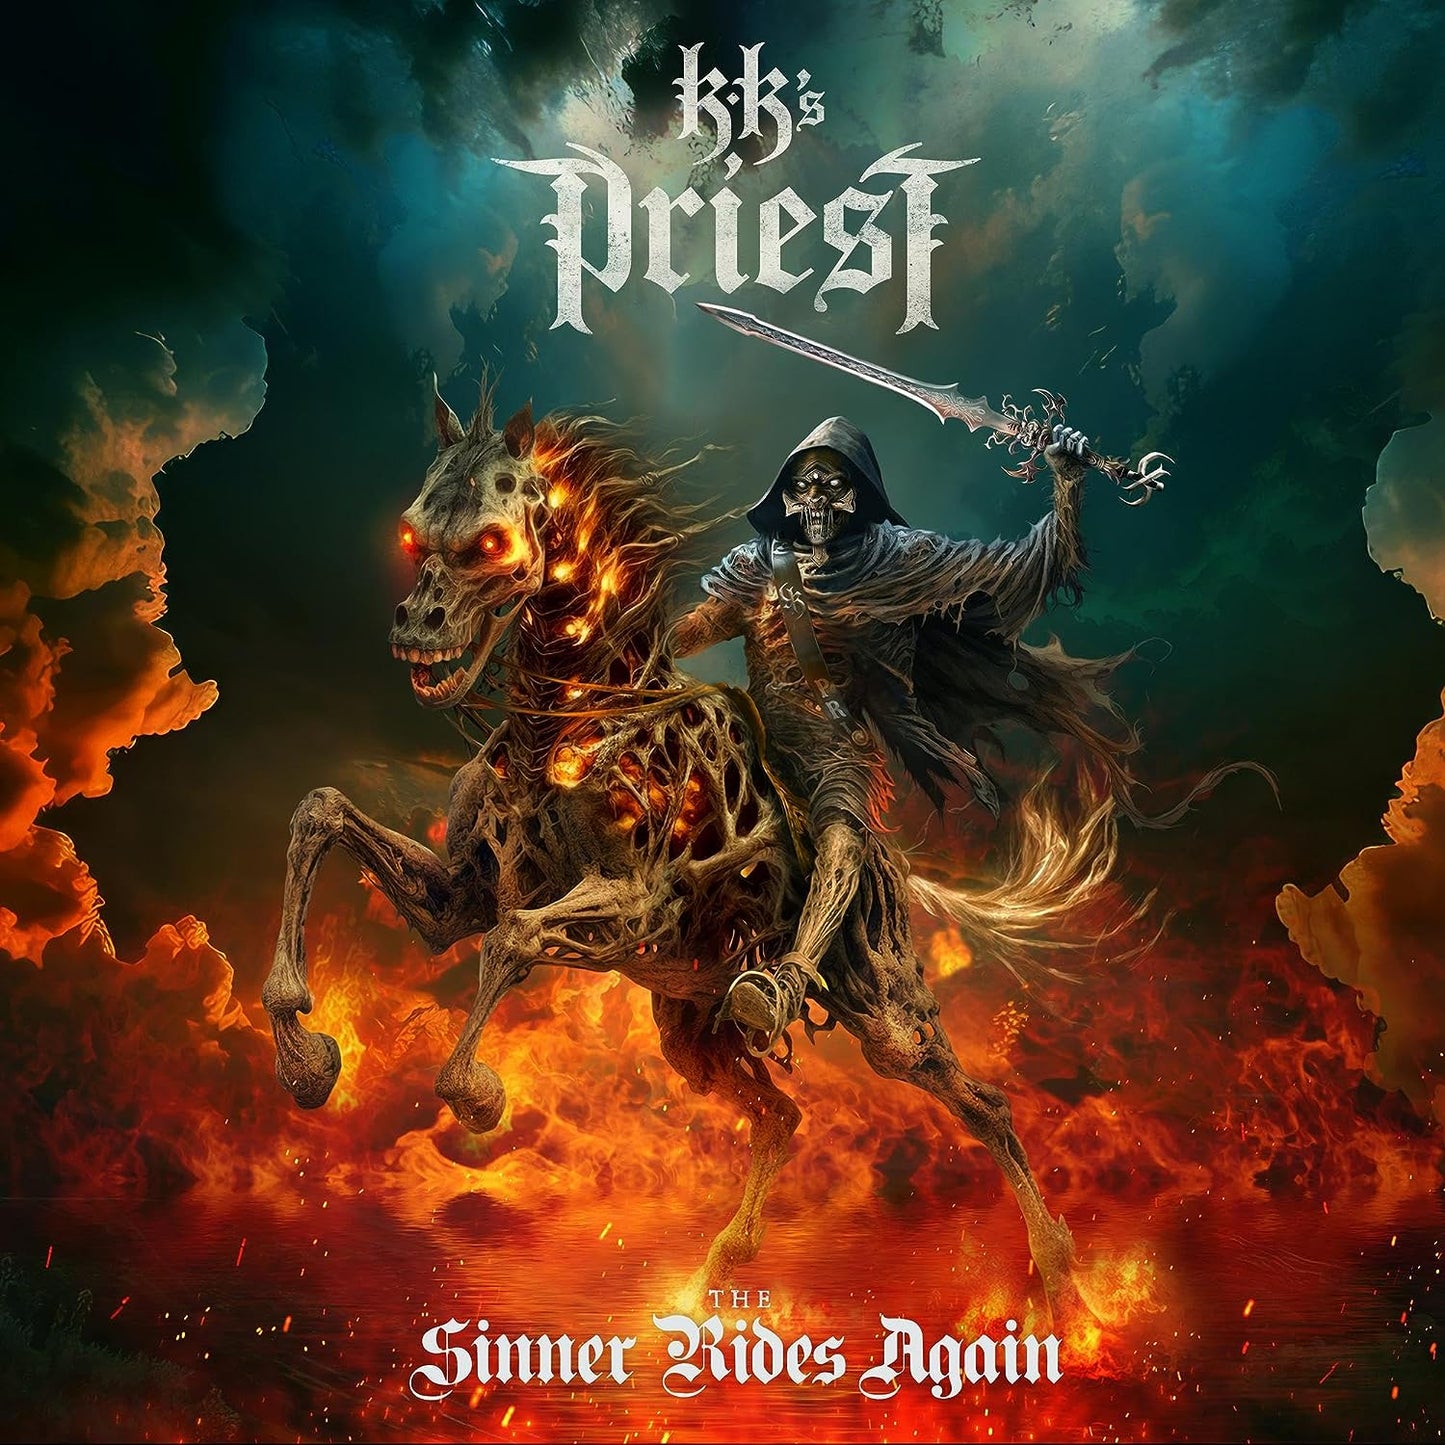 CD - KK's Priest - The Sinner Rides Again